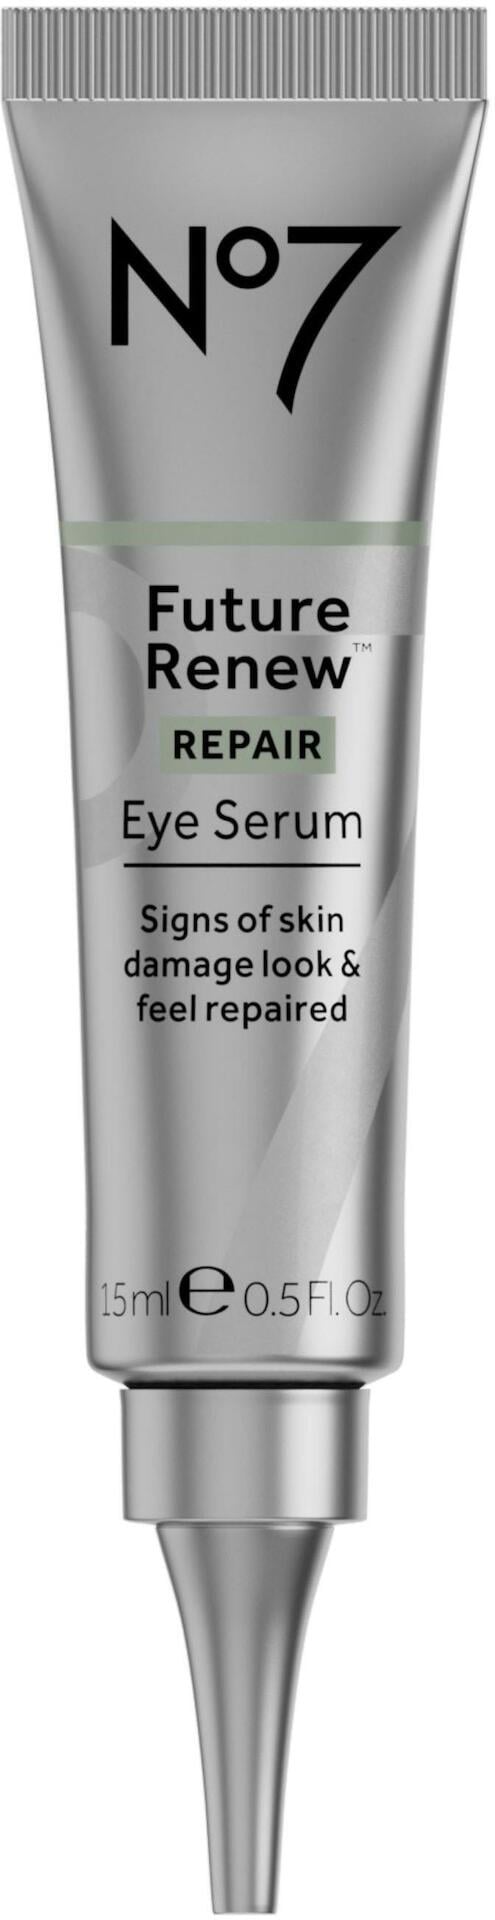 No7 Future Renew Repair Eye Serum 15ml